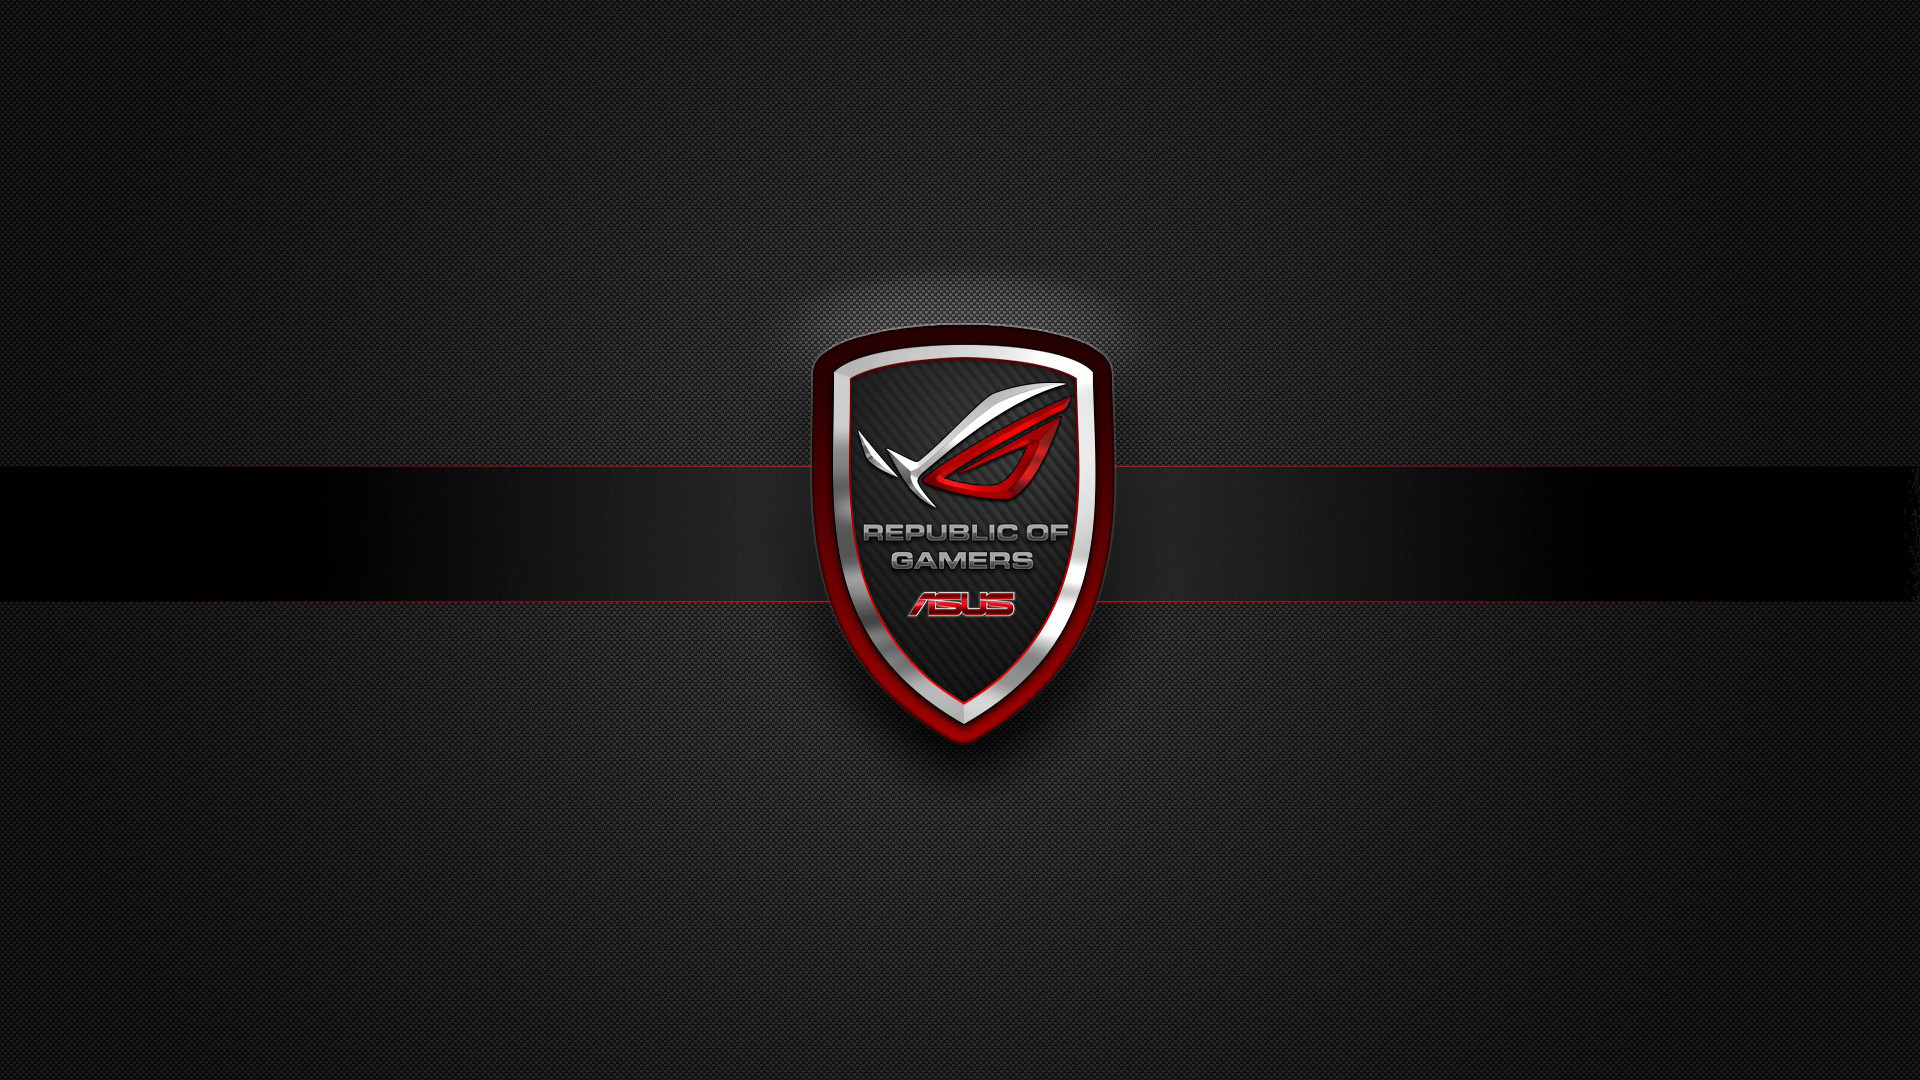 asus rog (republic of gamers) badge logo hd. 1080p wallpaper .